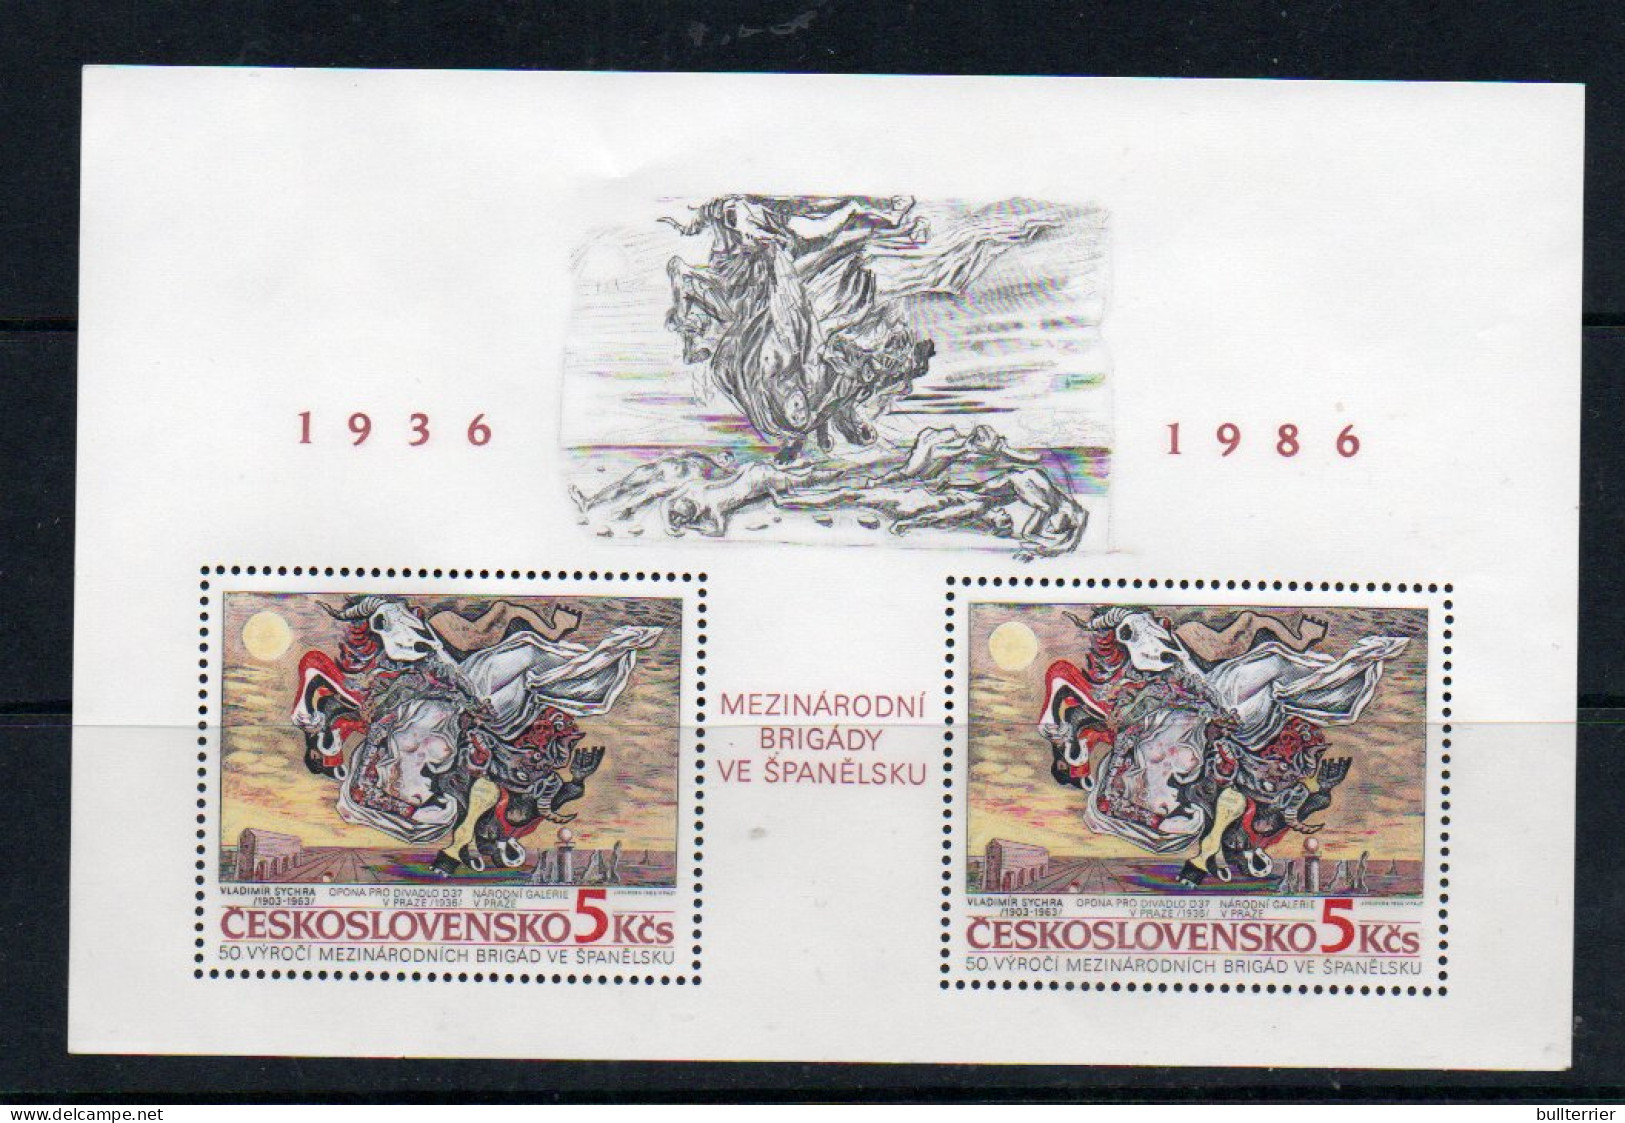 CZECHOSLOVAKIA - 1986- INTERNATIONAL BRIGADES  SOUVENIR SHEET MINT NEVER HINGED  - Neufs